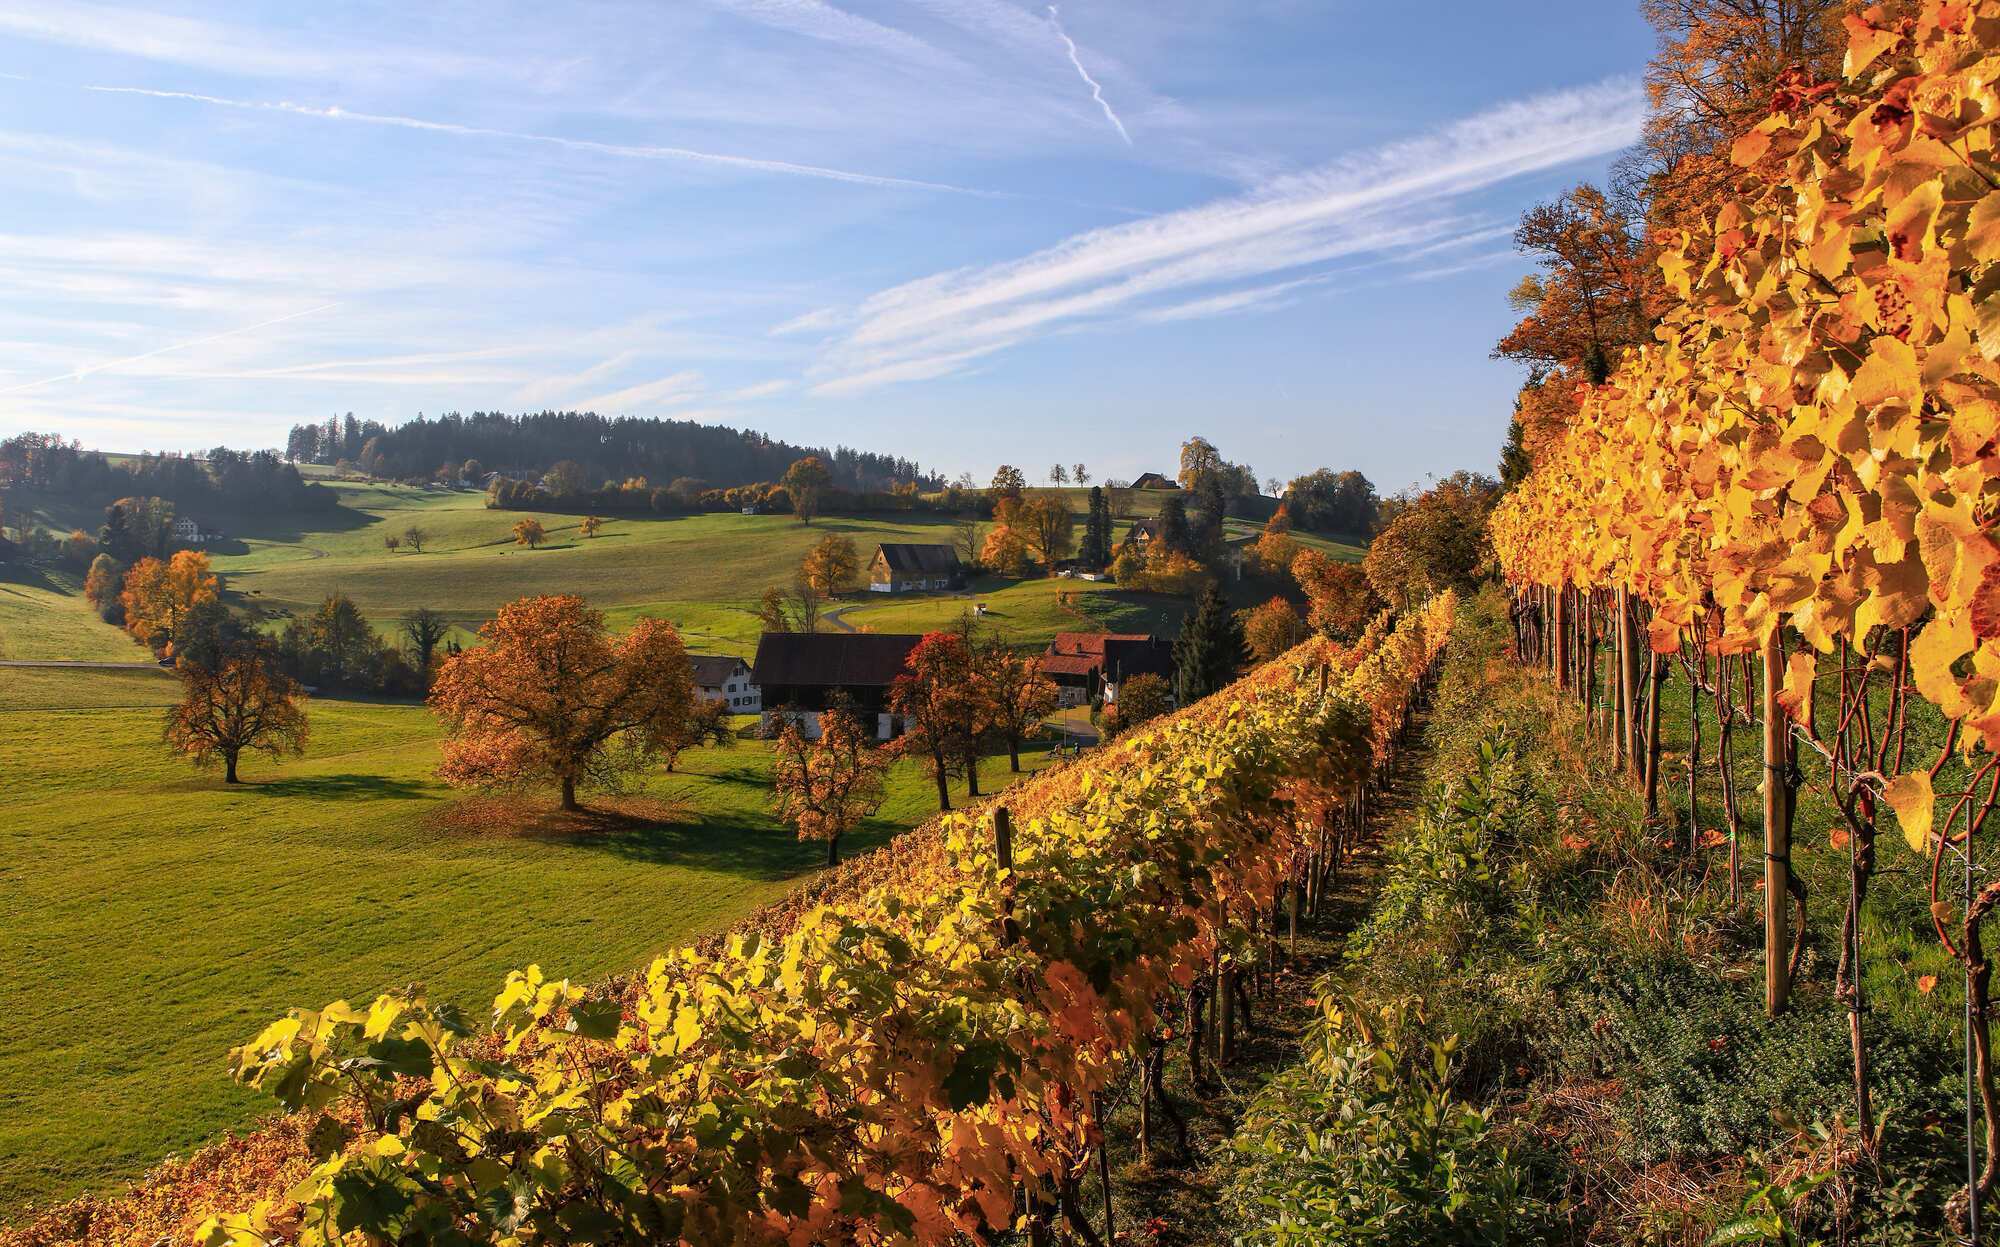 Вино і подорож: найкращі винні регіони Європи